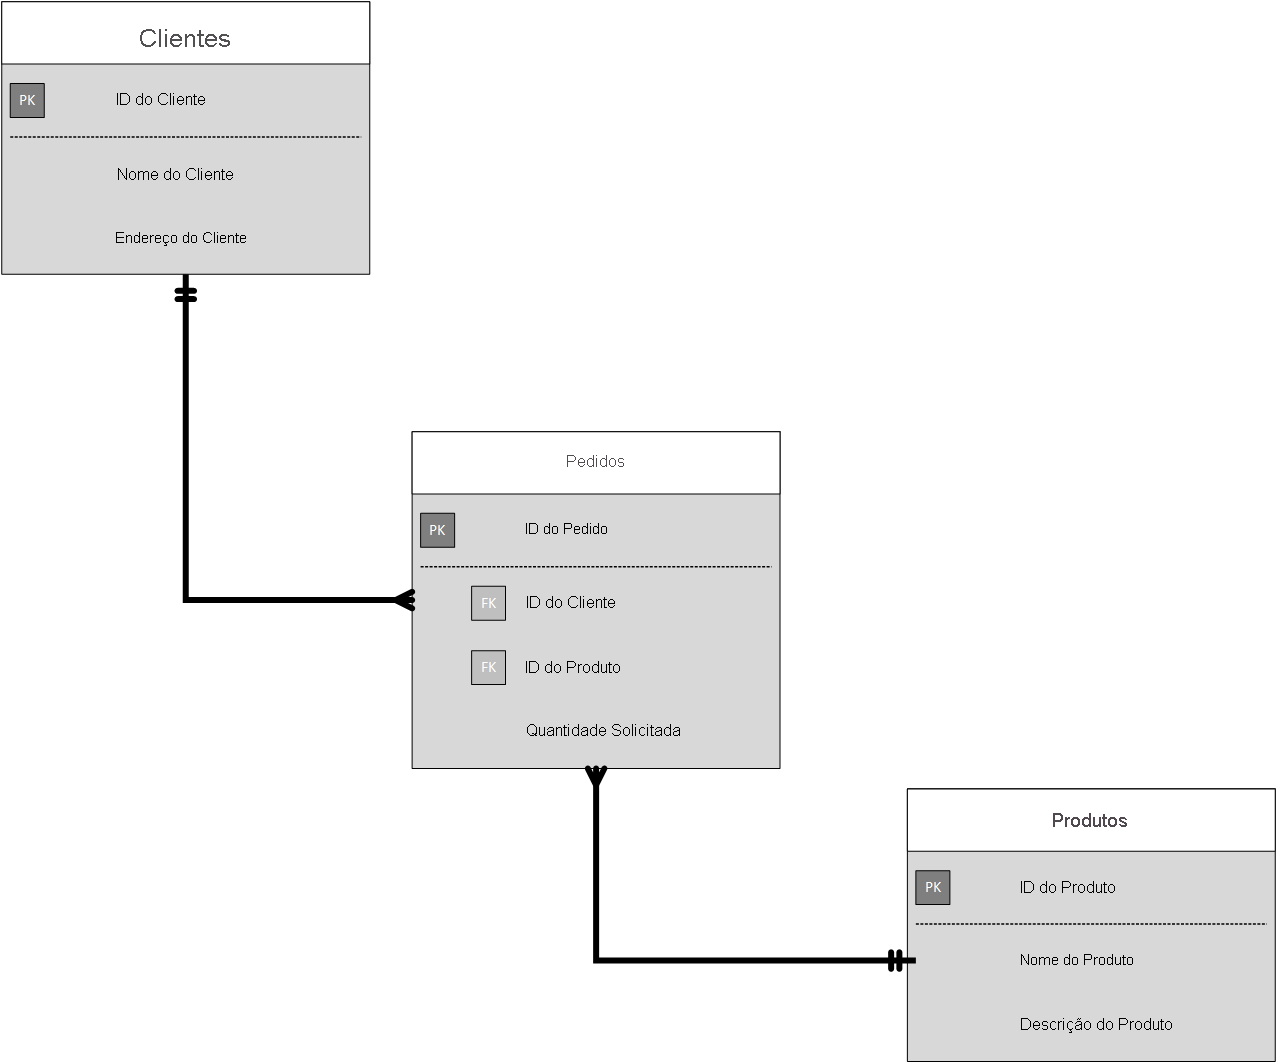 Diagrama que apresenta um exemplo de um modelo relacional, mostrando clientes, pedidos e produtos.